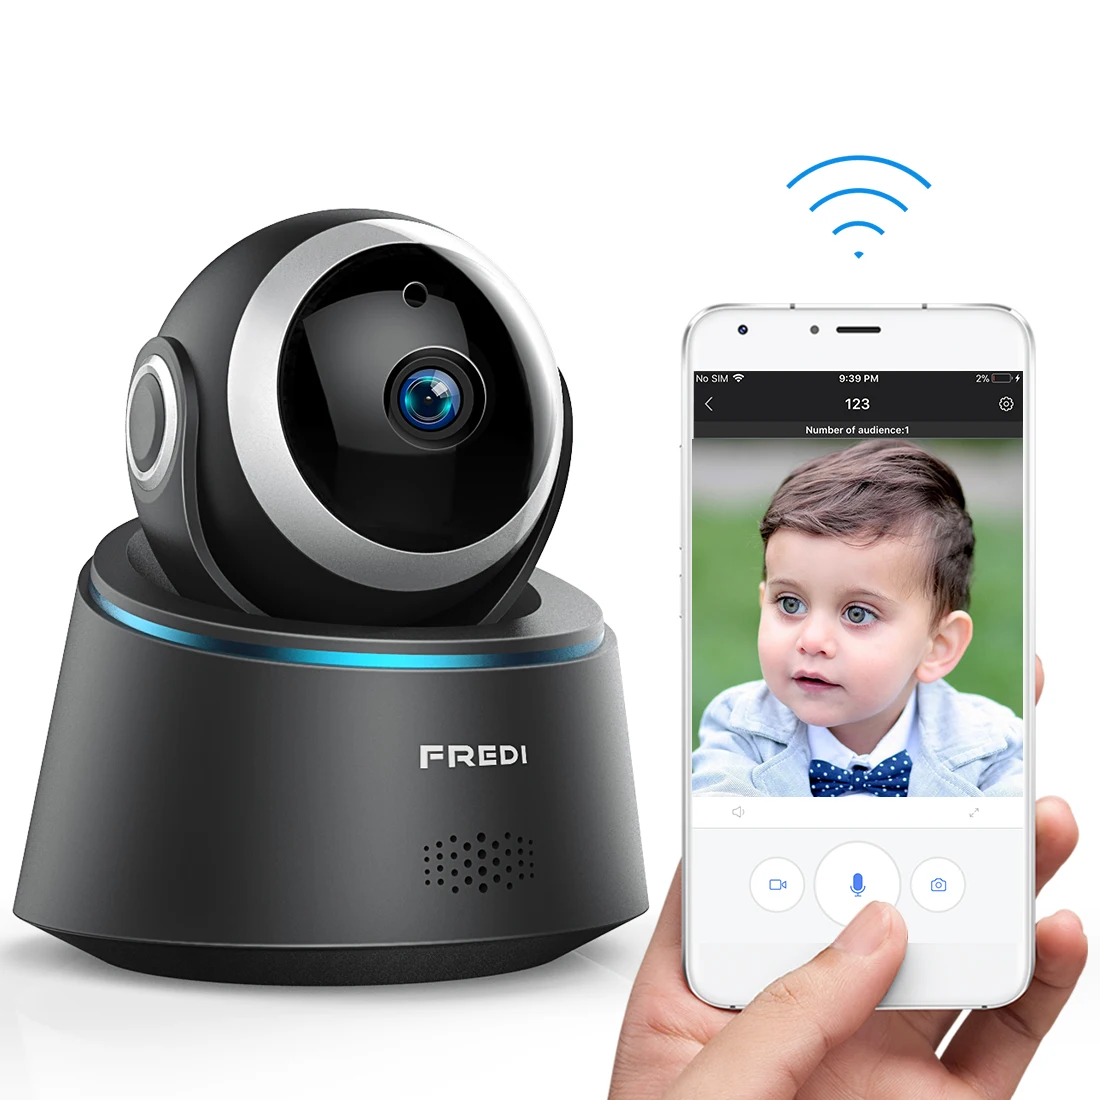 FREDI Беспроводная ip-камера Детский Монитор 1080P WiFi камера безопасности инфракрасная камера ночного видения CCTV камера обнаружения движения